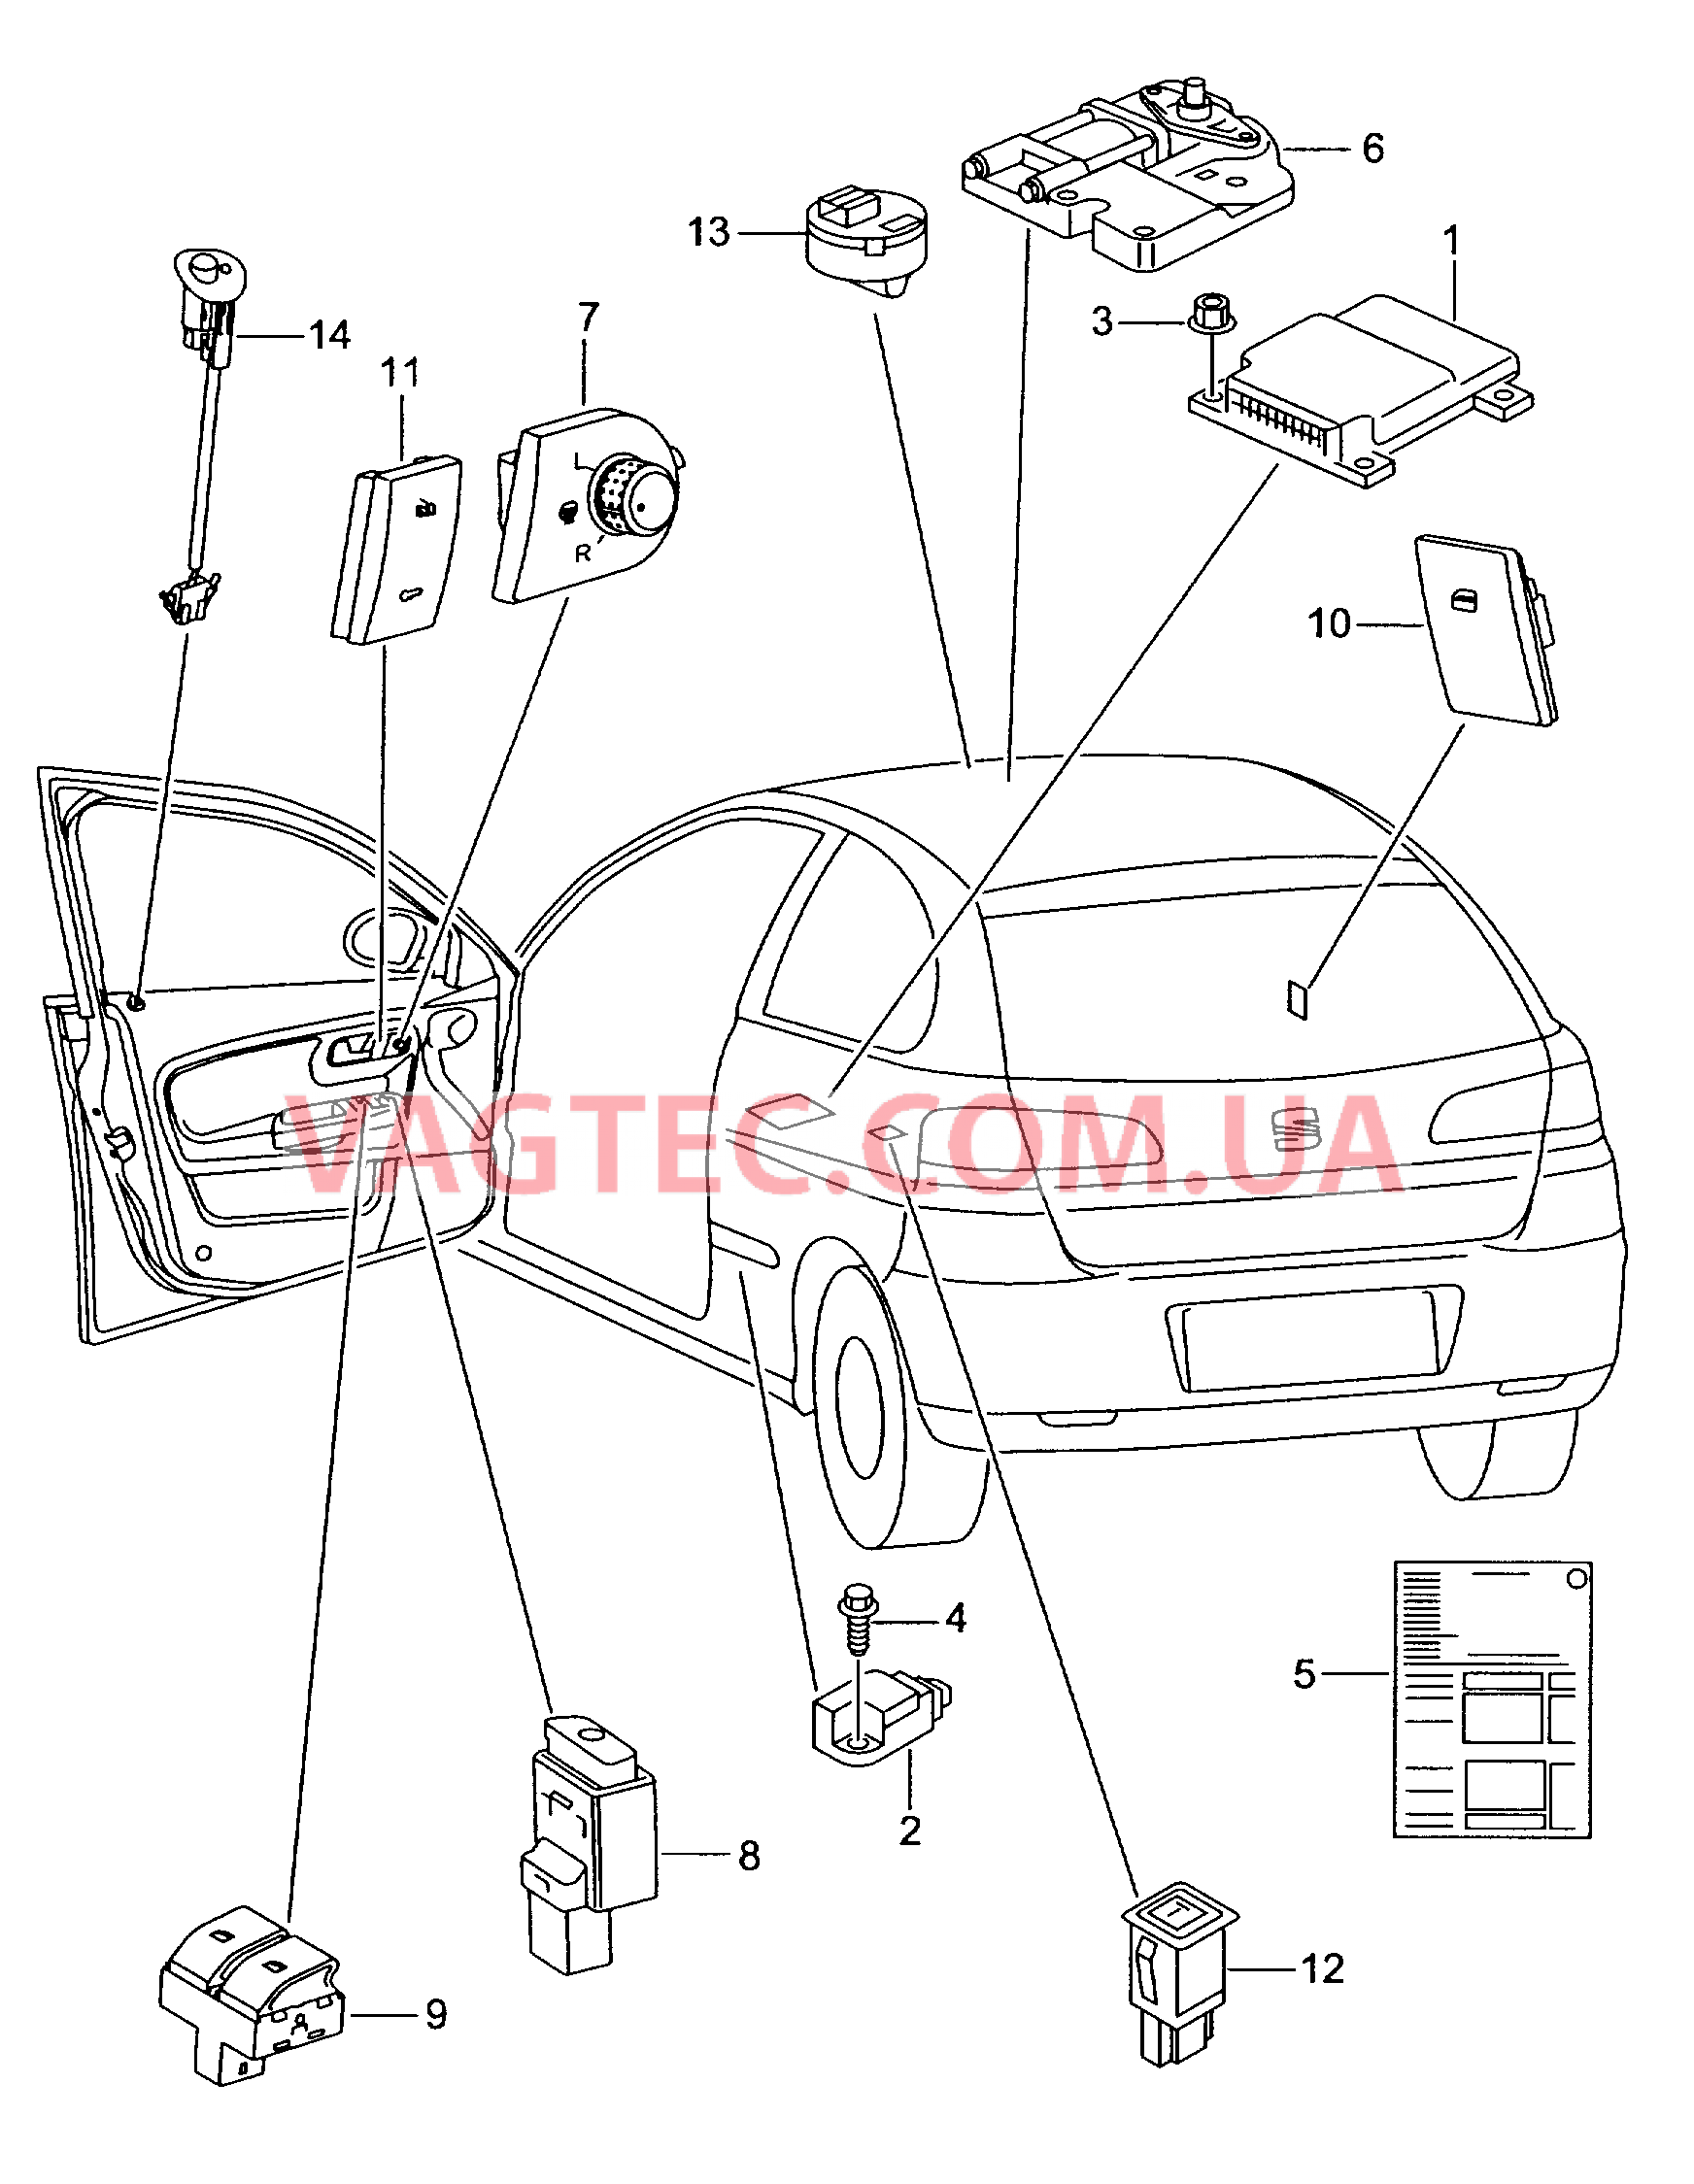 Электродетали для подуш.безоп. Мотор привода люка Выключатель в обивке двери Лампа, контрольная для противоугонной системы  для SEAT CO 2003